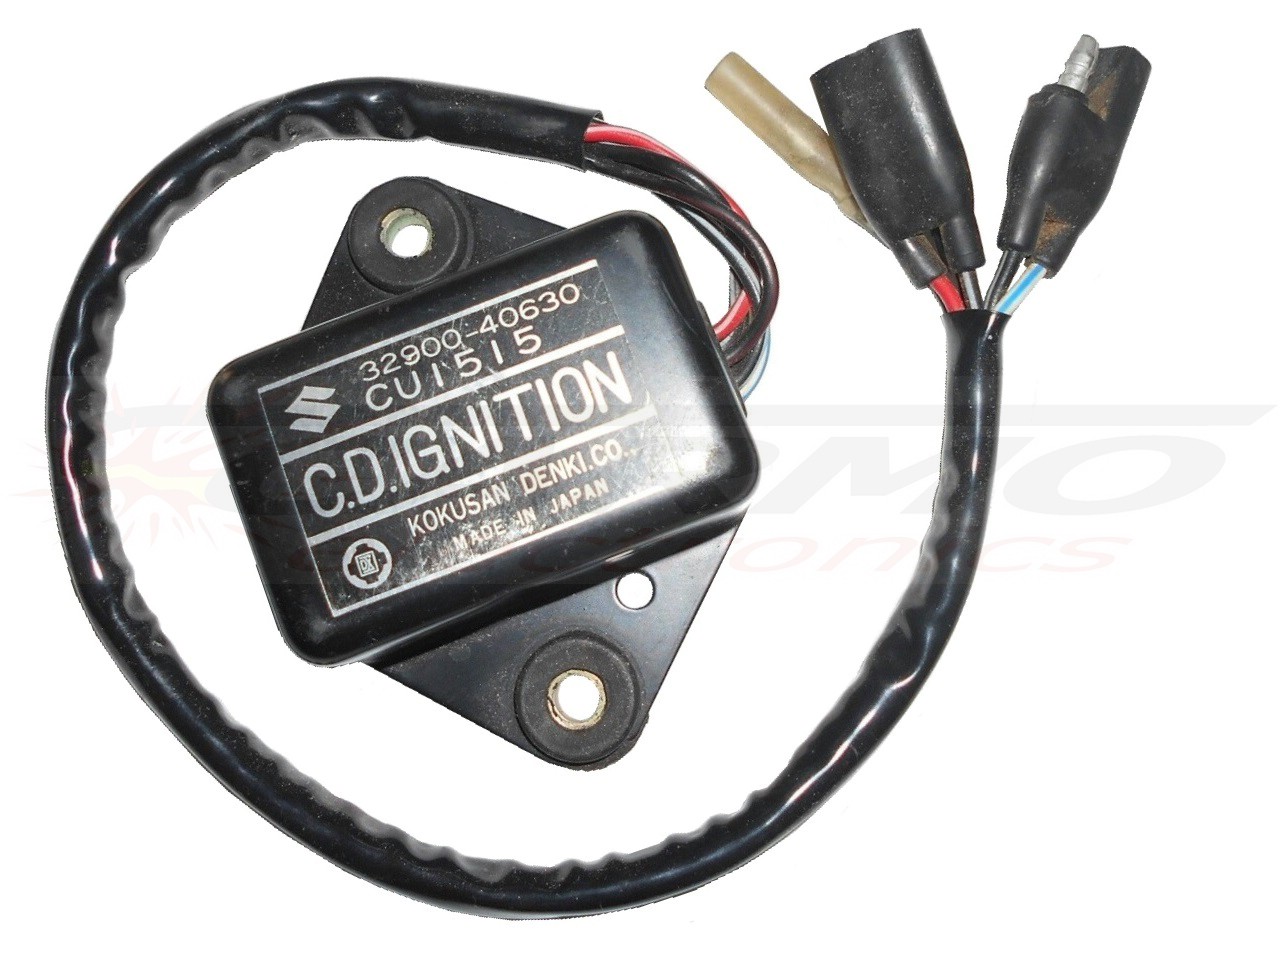 PE250 PE400 igniter ignition module CDI Box (CU1515, CU1510, 32900-40603, 32900-40920, C.D.IGNITION)